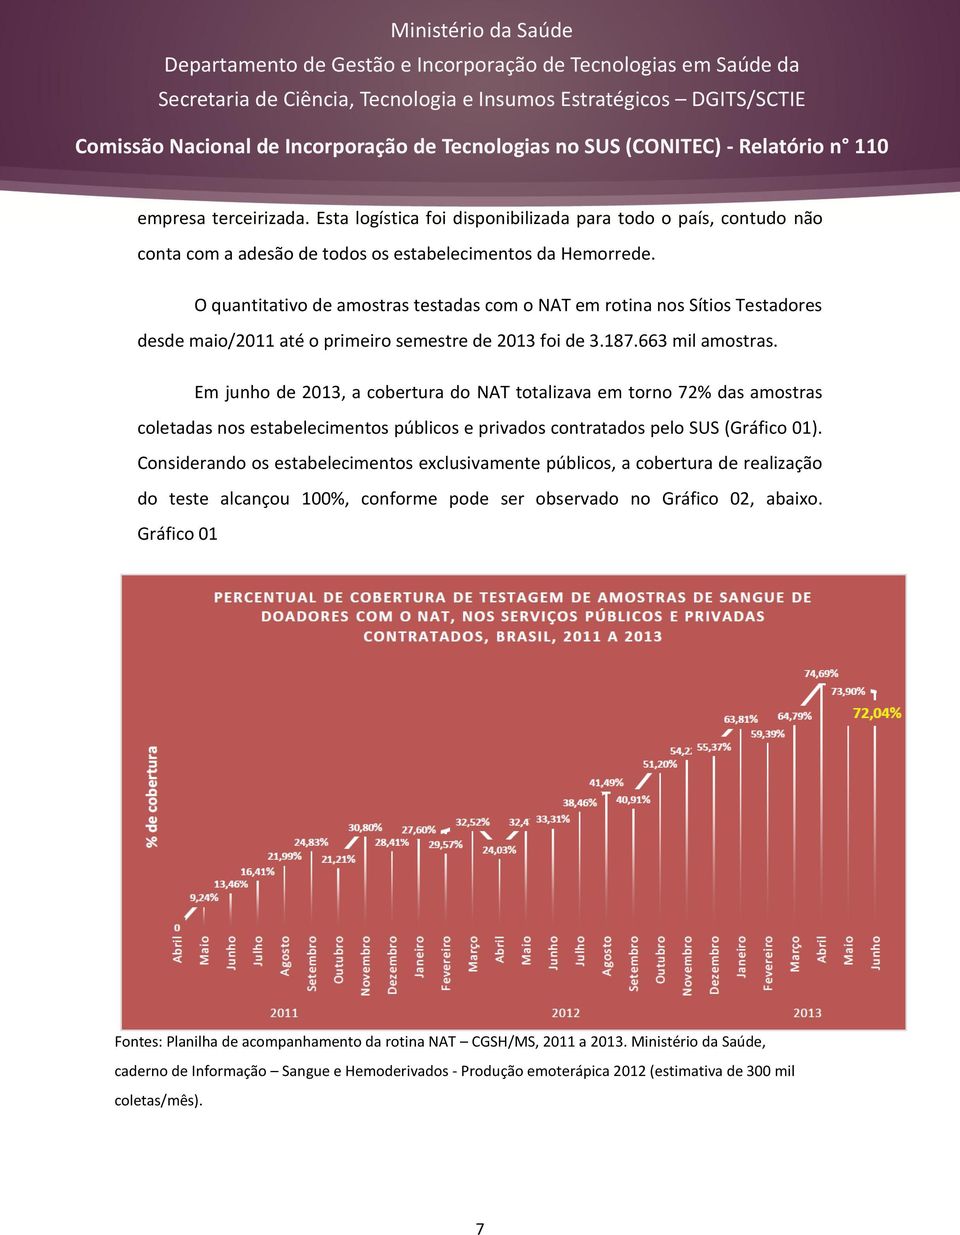 Em junho de 2013, a cobertura do NAT totalizava em torno 72% das amostras coletadas nos estabelecimentos públicos e privados contratados pelo SUS (Gráfico 01).